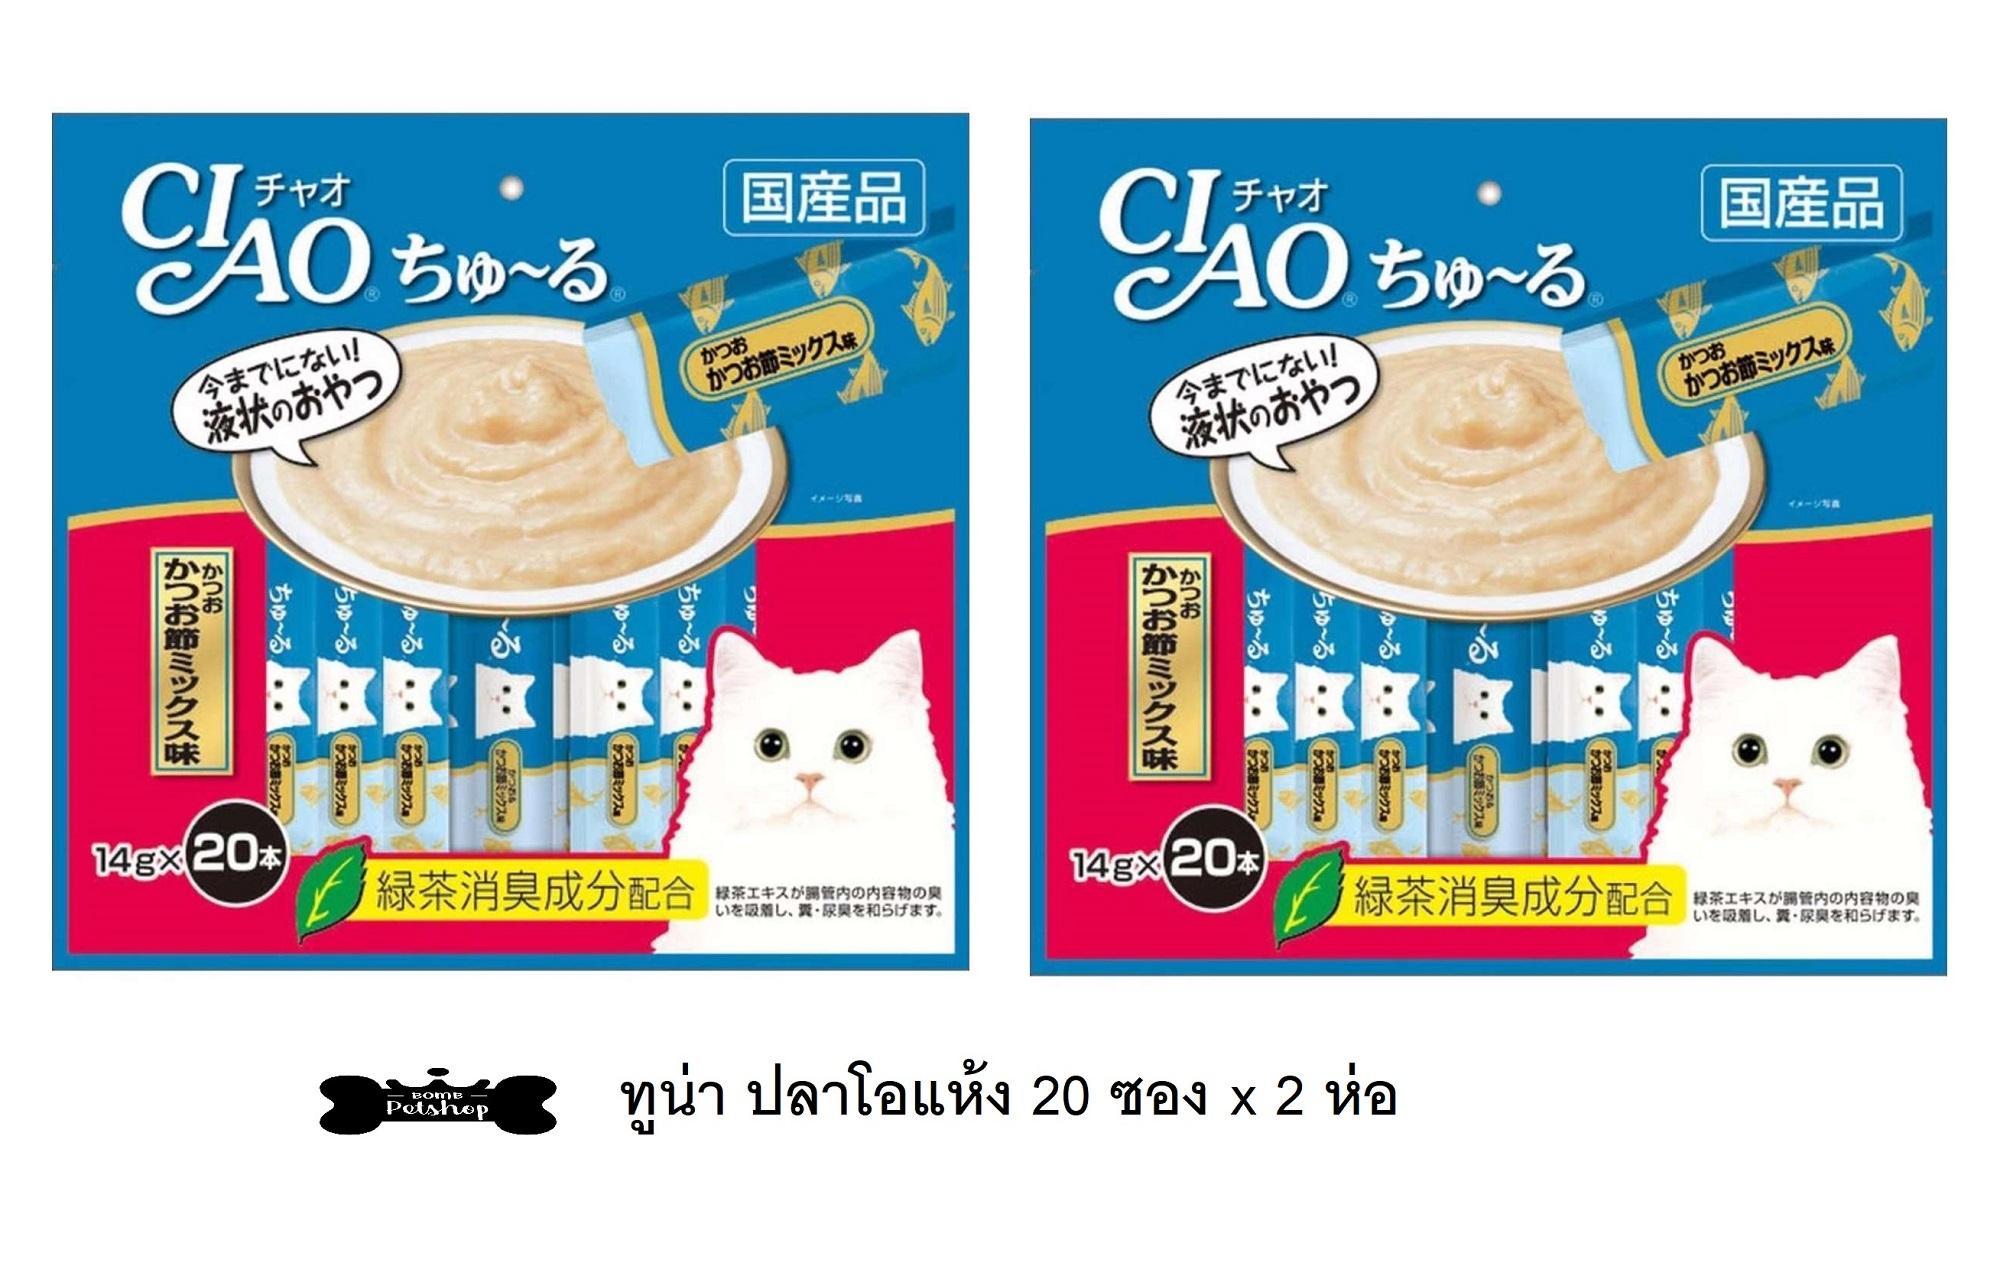 CIAO Churu ชูหรู ขนมแมวเลีย รสทูน่าผสมปลาโอแห้ง (SC-130) จำนวน 20 ซอง x 2 ห่อ